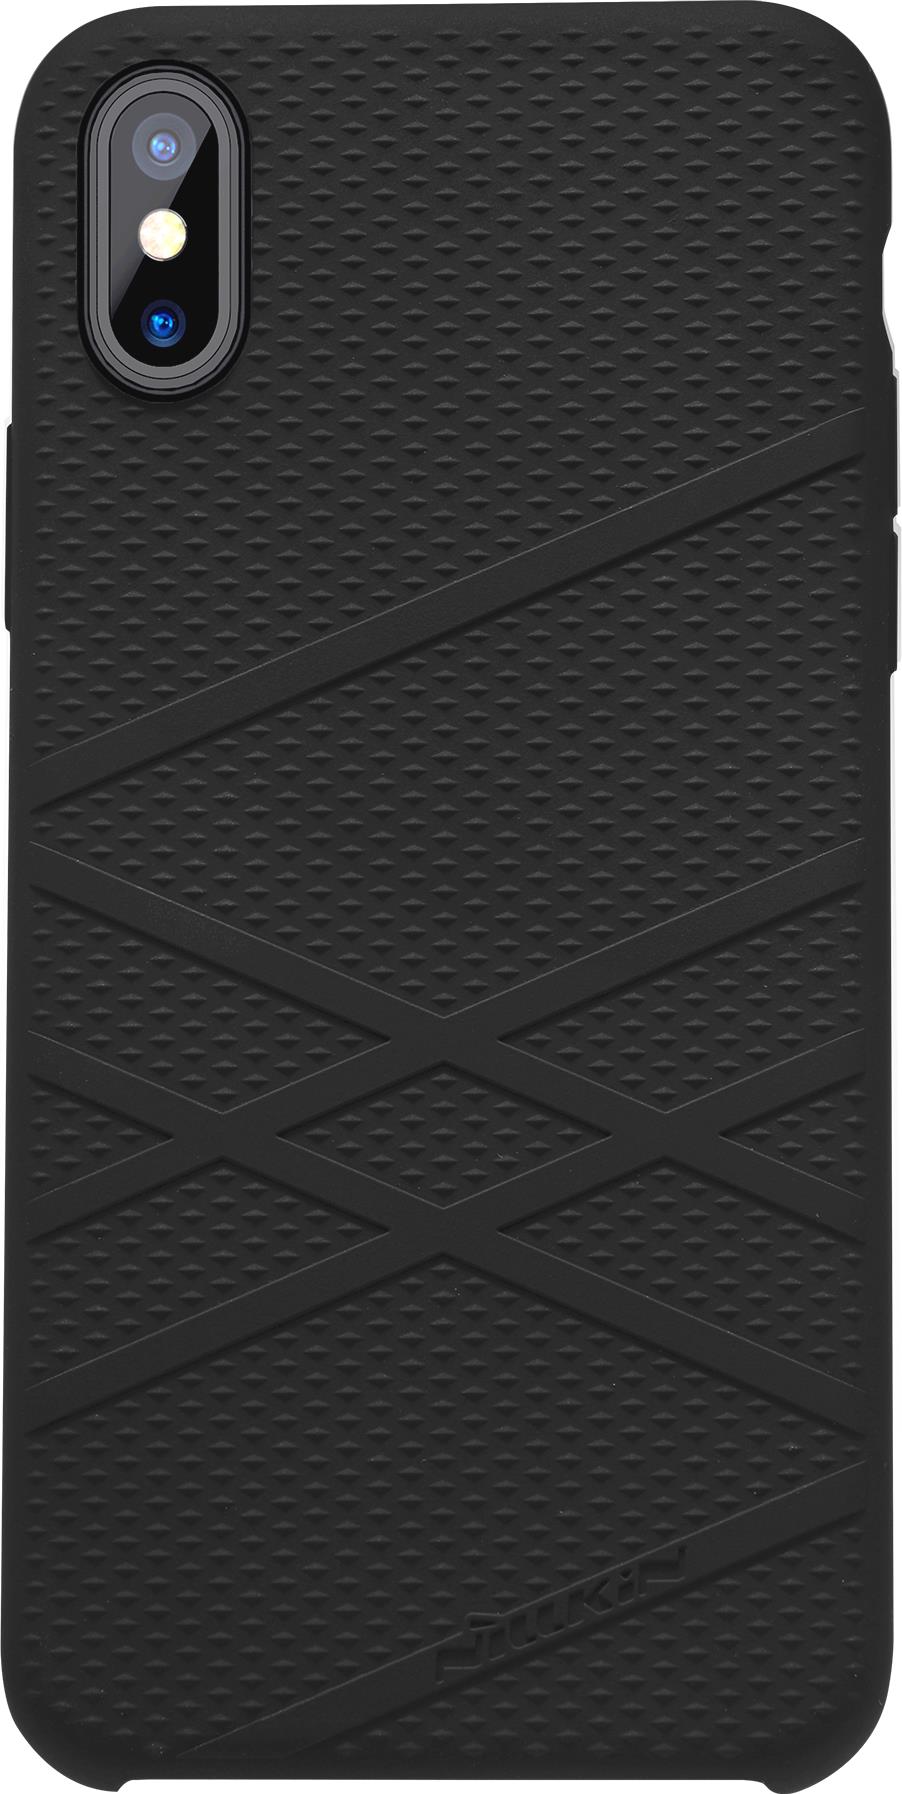 Чехол для сотового телефона Nillkin Flex Case, 6902048146181, черный